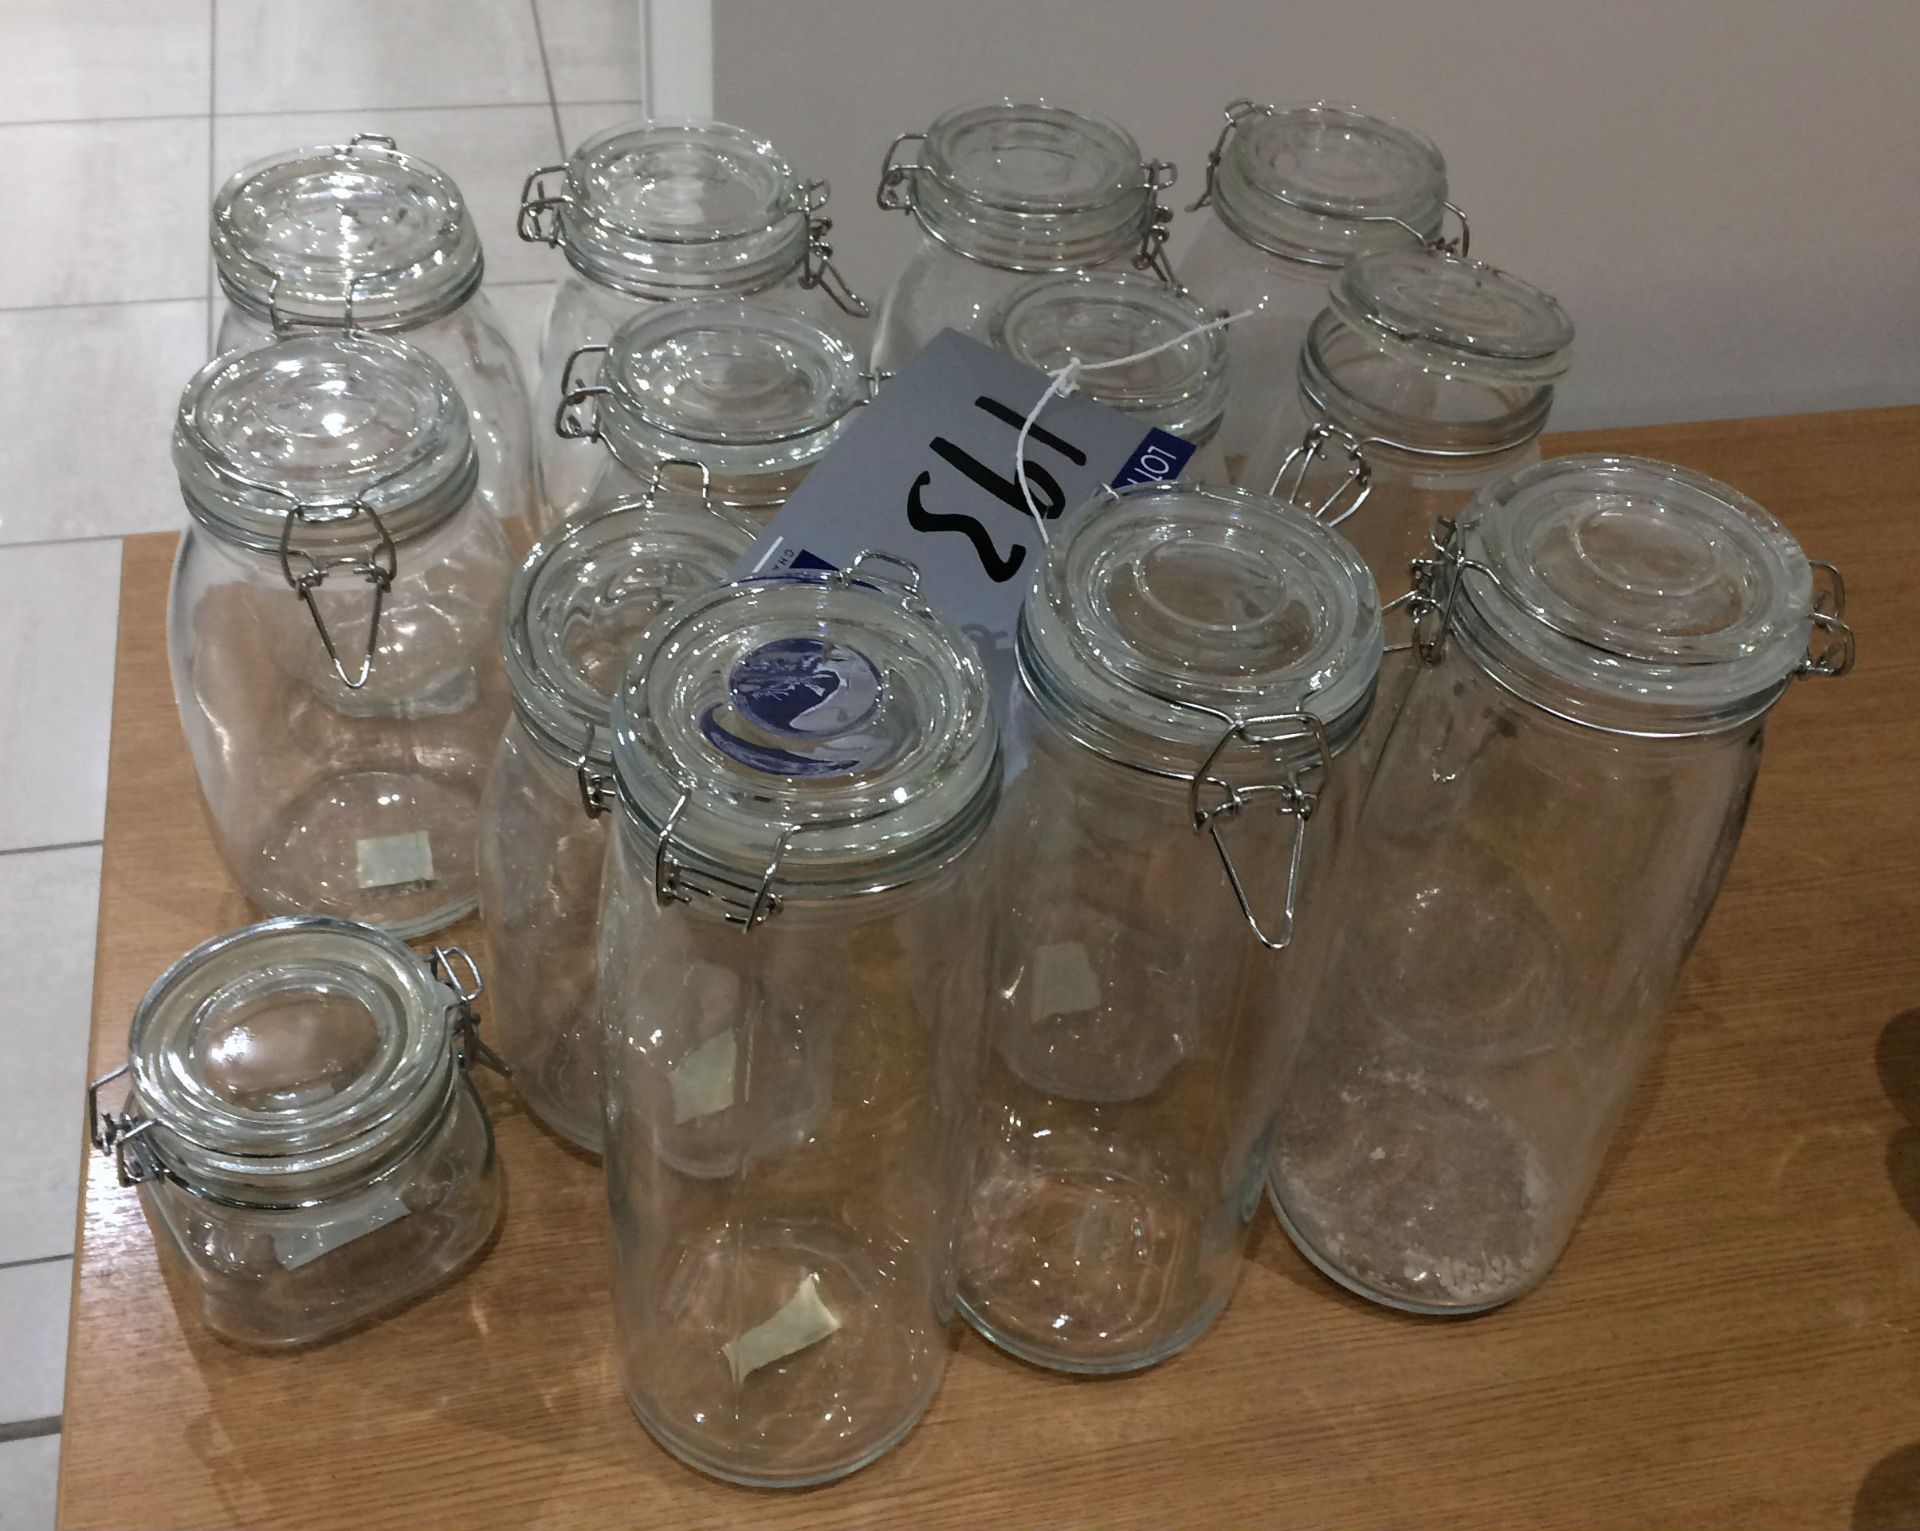 11 Ikea Glass Kilner Jars, 22cm; 3 Glass Kilner Jars, 30cm; 1 Chunky Glass Kilner Jar, 10cm.